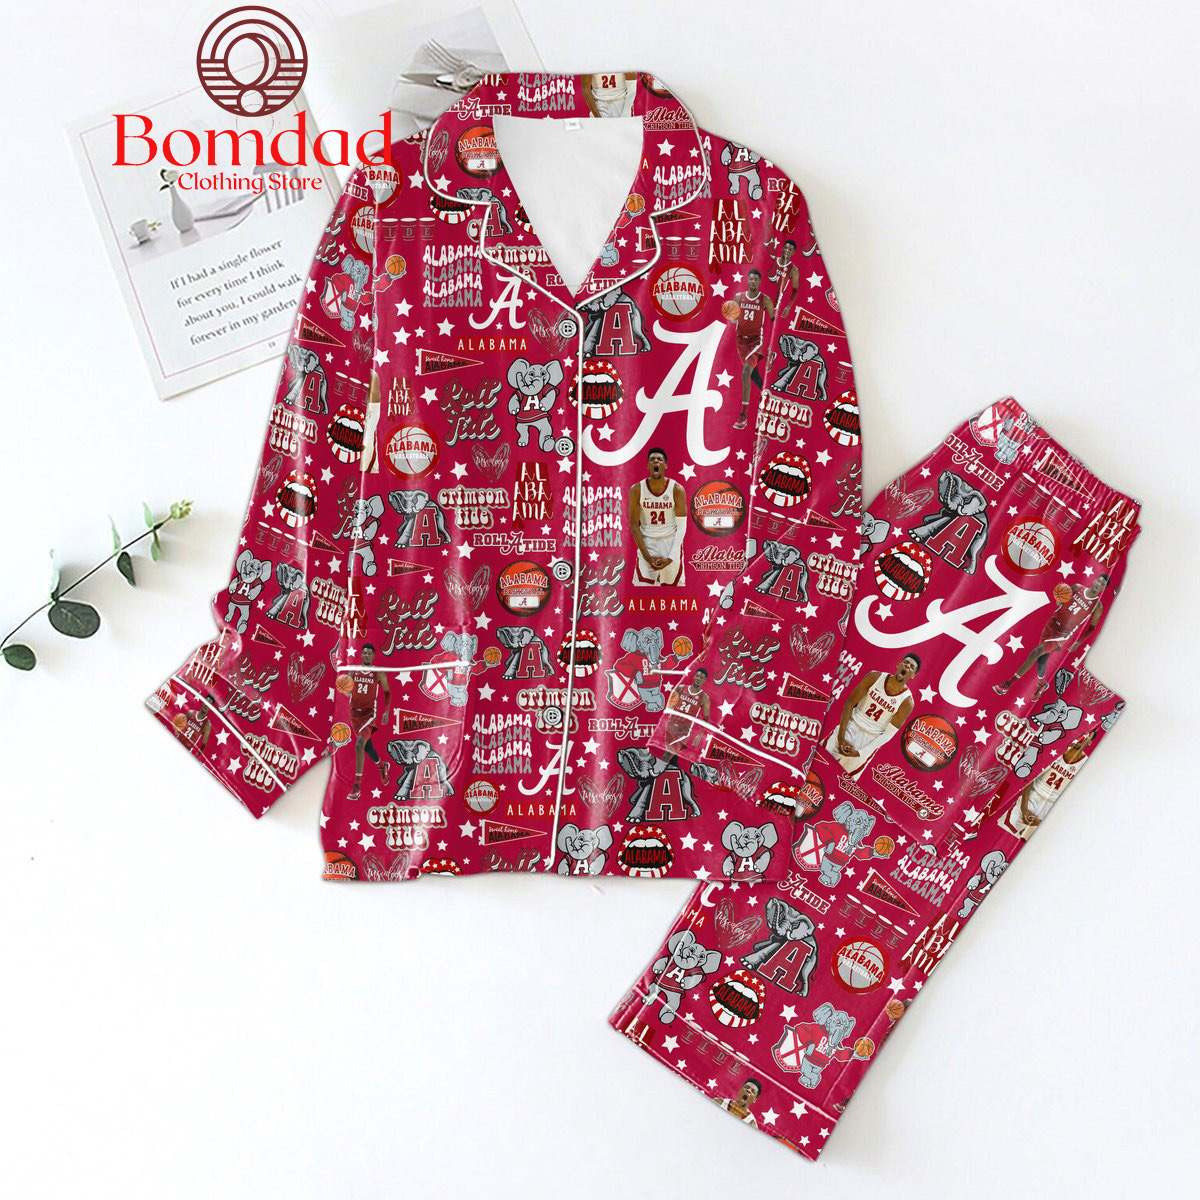 Alabamas Crimsons Tides Rolls Tides Rolls Pajamass Sets -s Bomdads